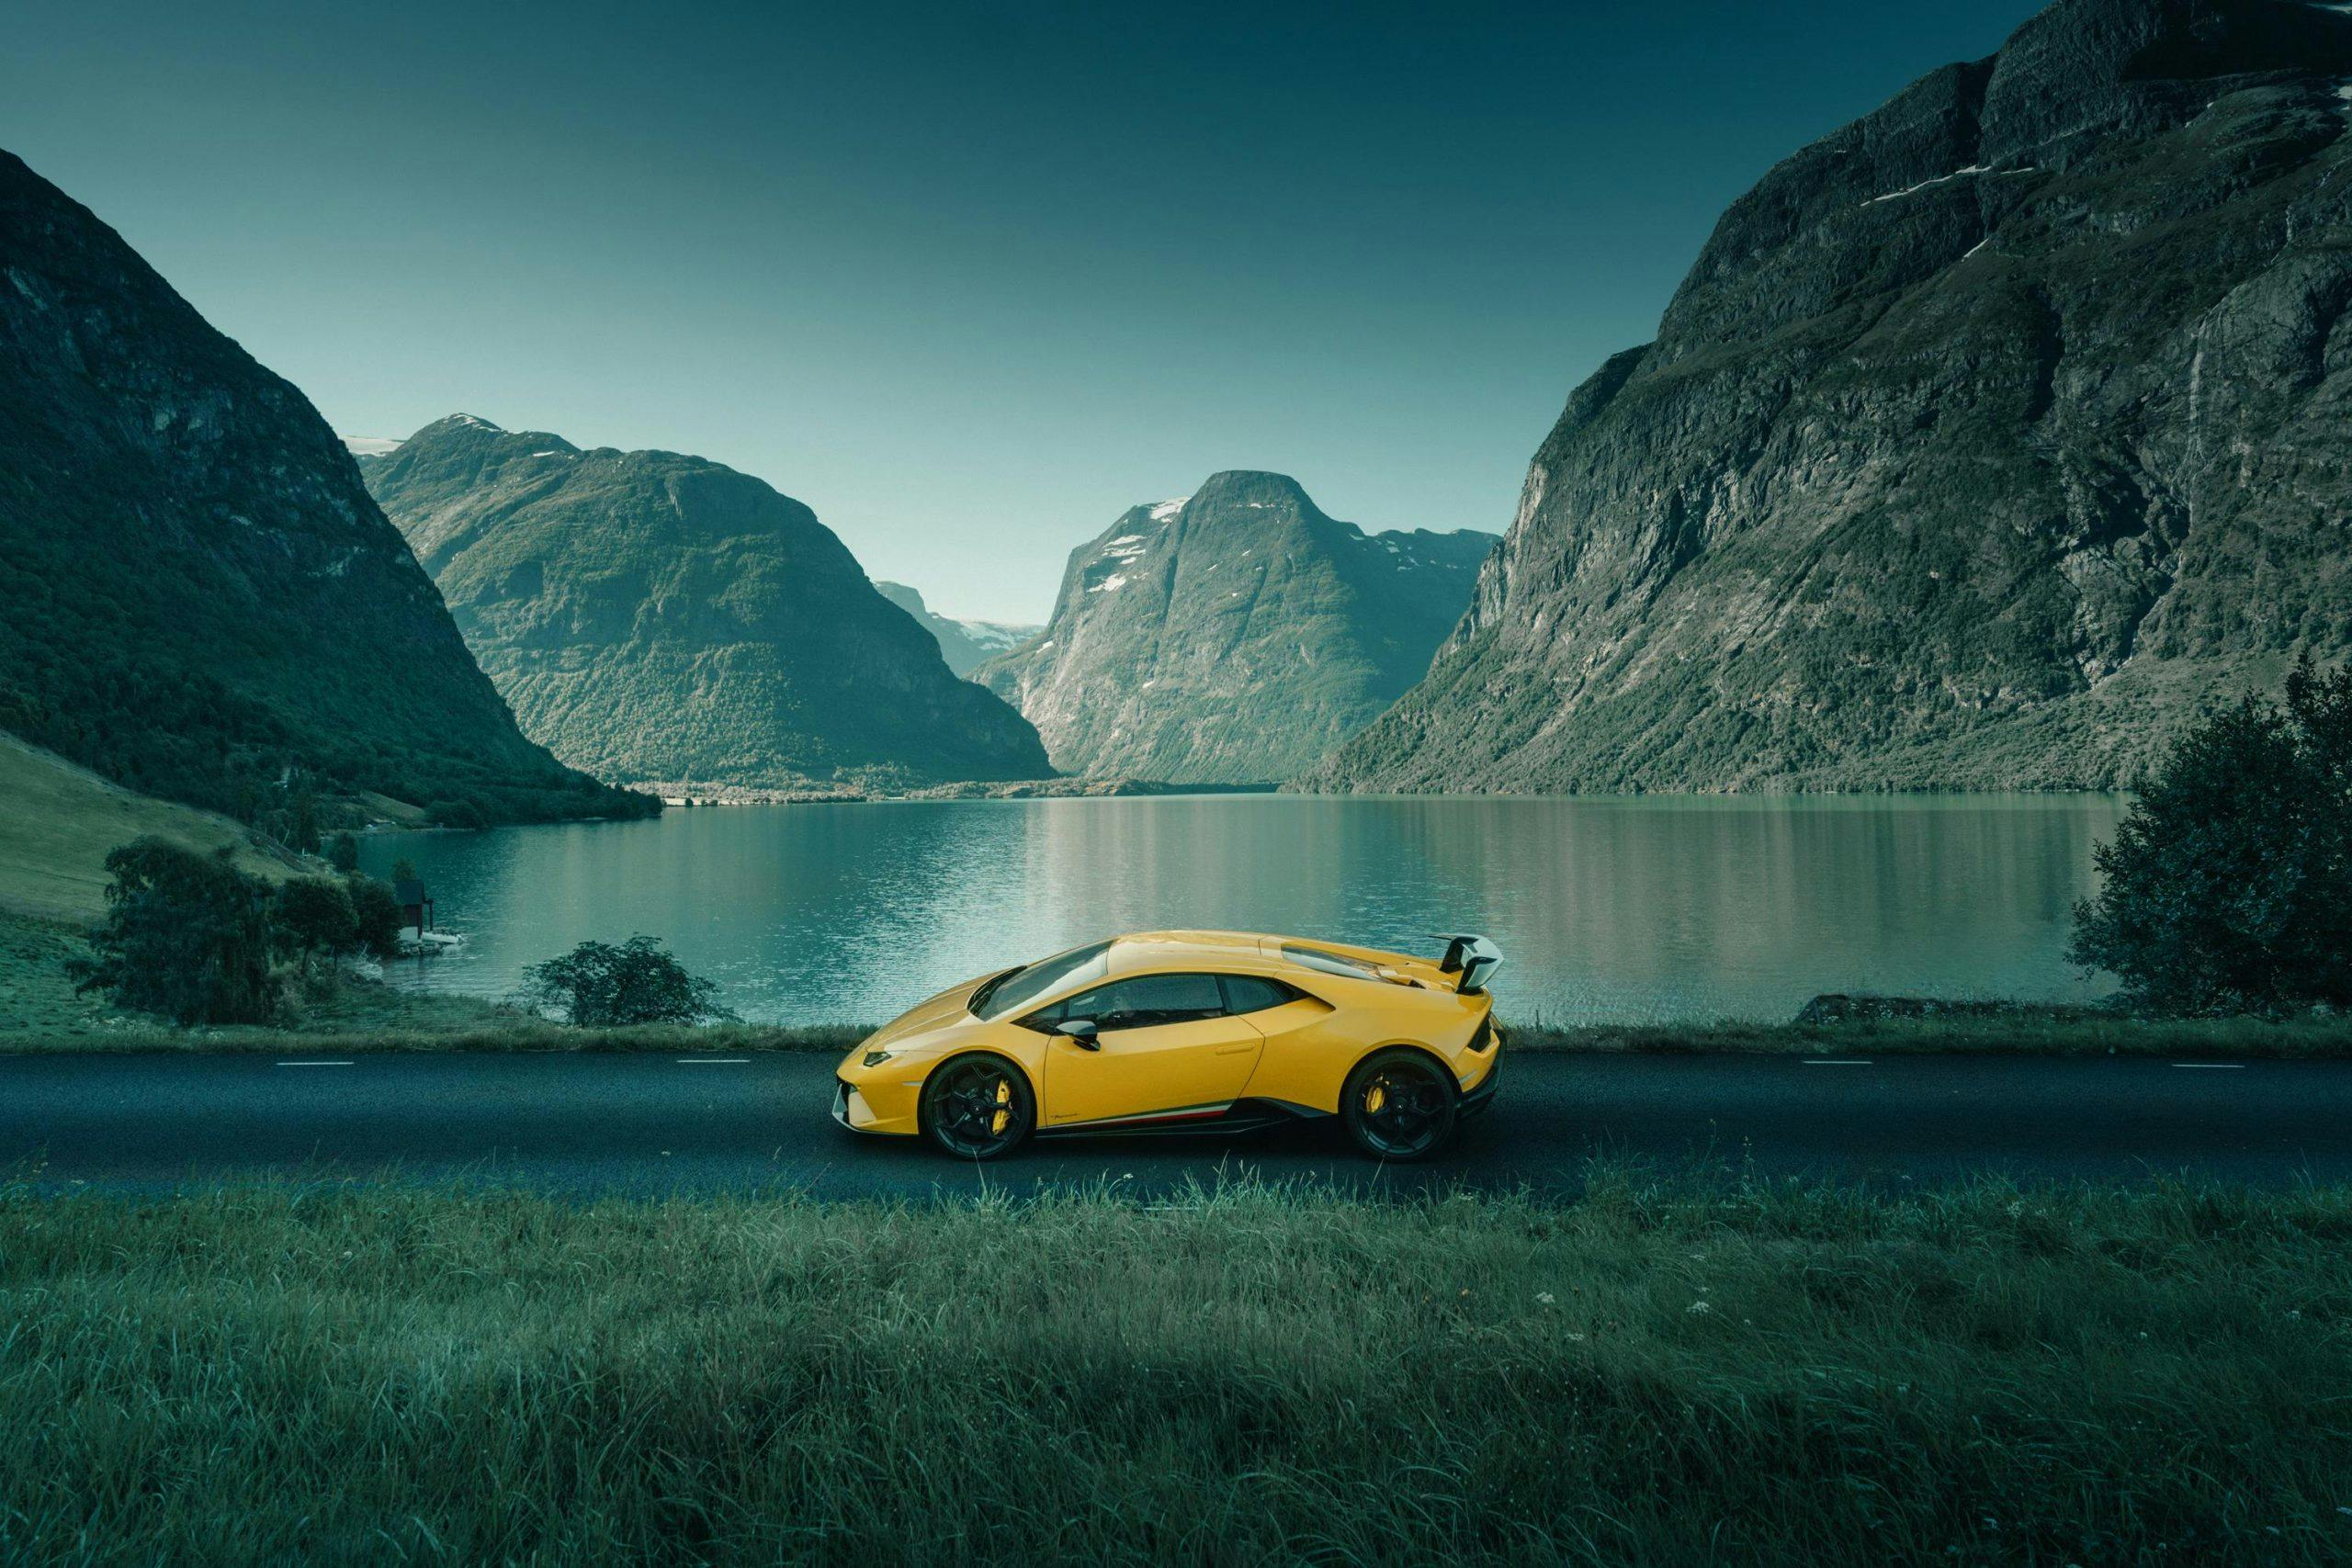 Lamborghini Huracán Performante yellow side profile